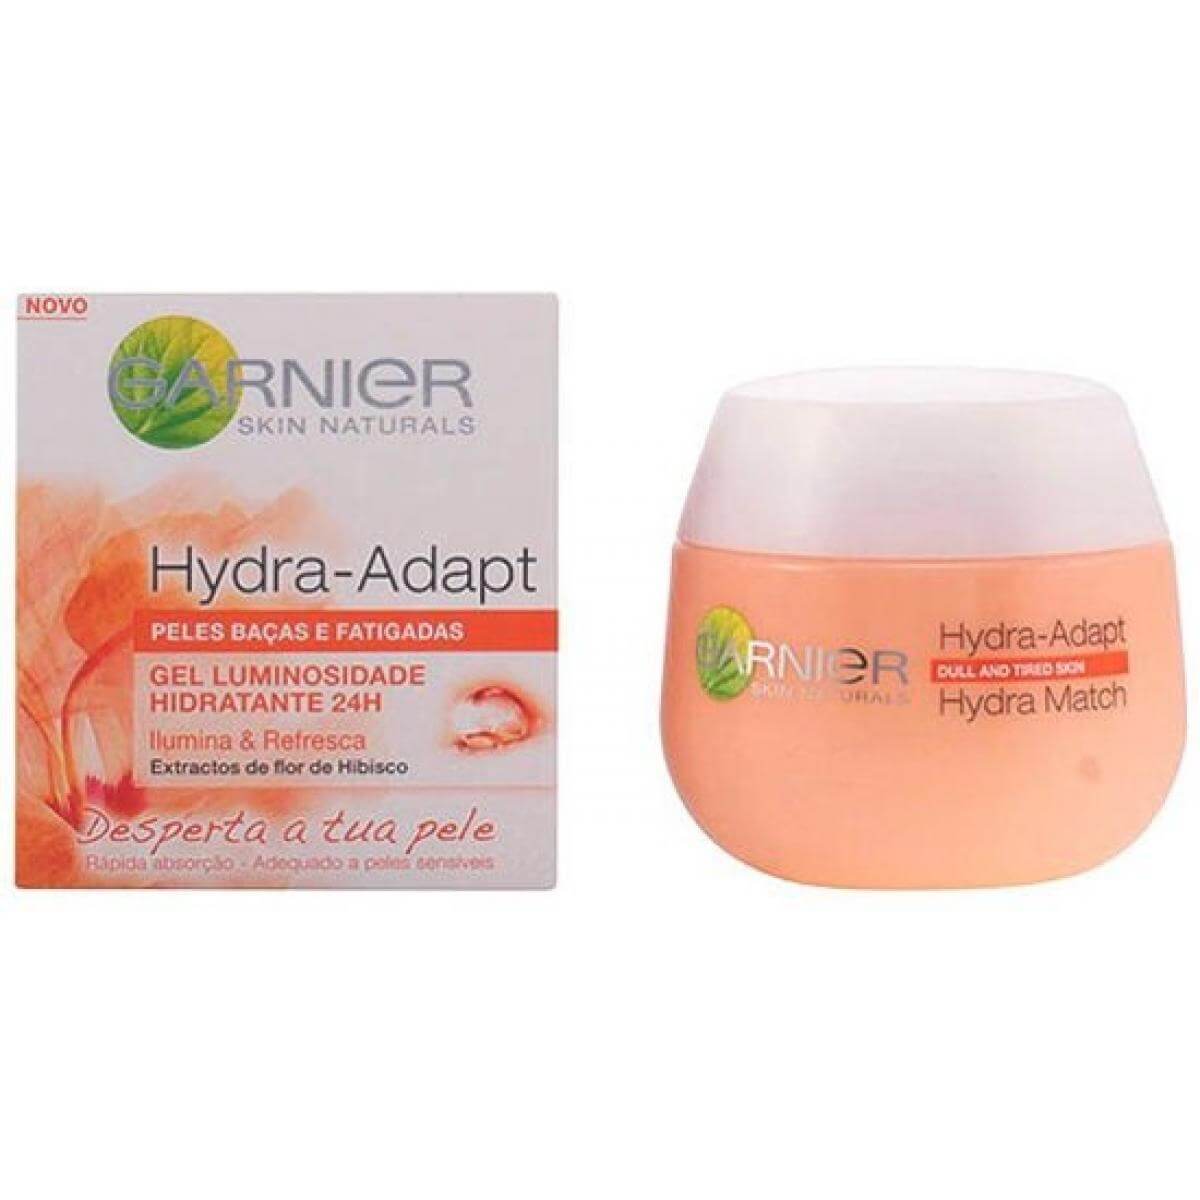 Garnier Hydra Match Revitalising Fresh Gel 24hr Hydration Cream